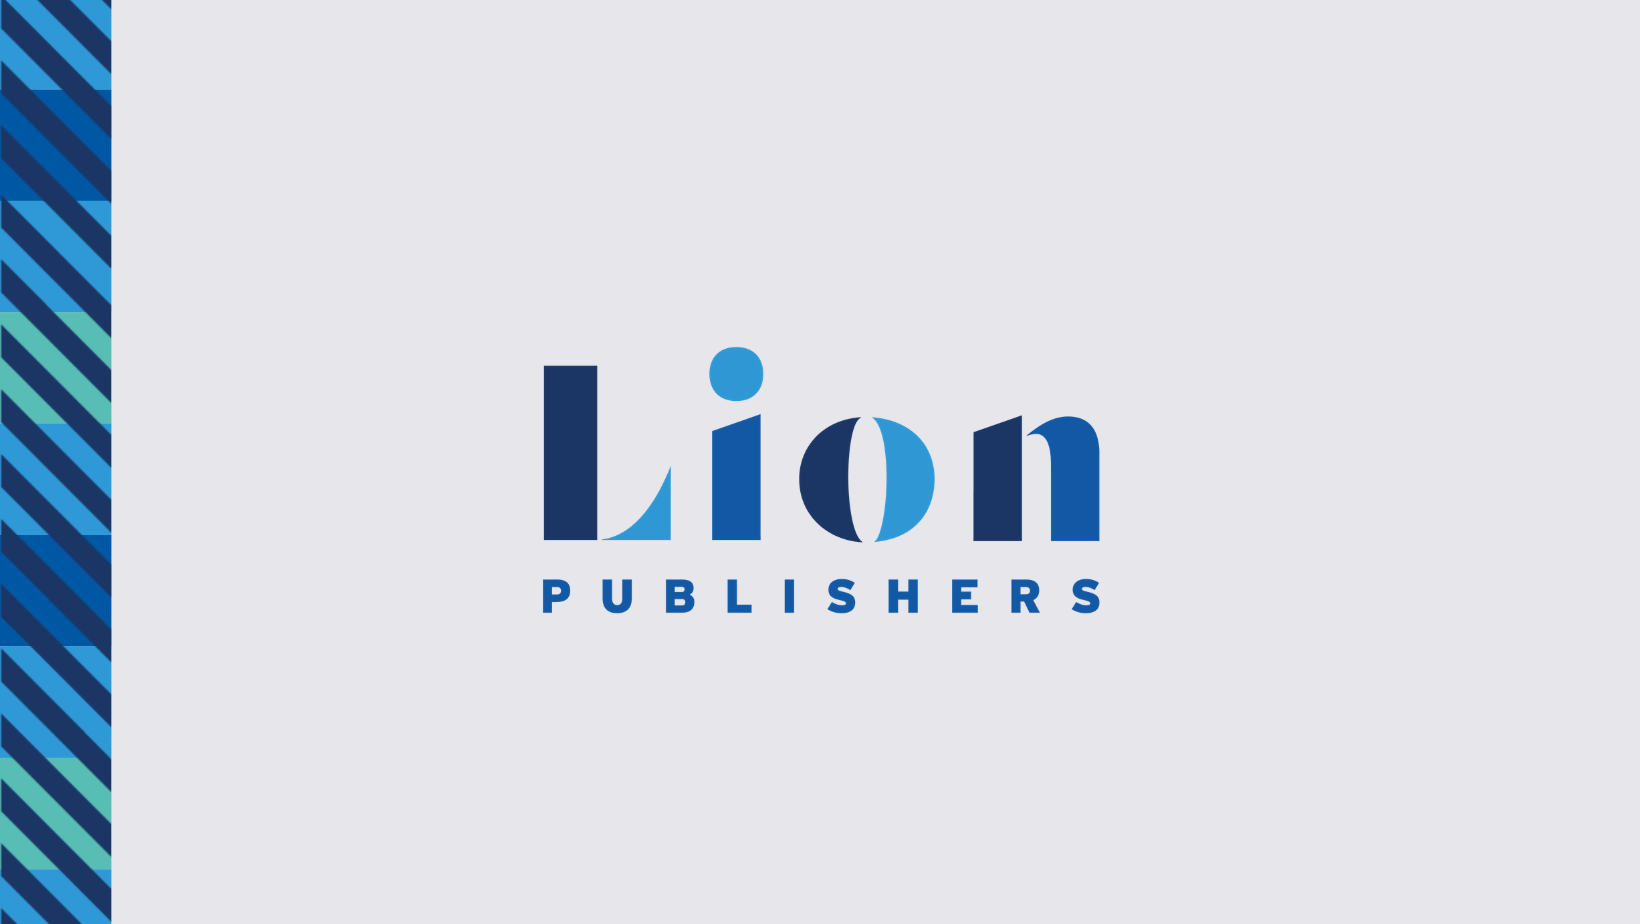 www.lionpublishers.com